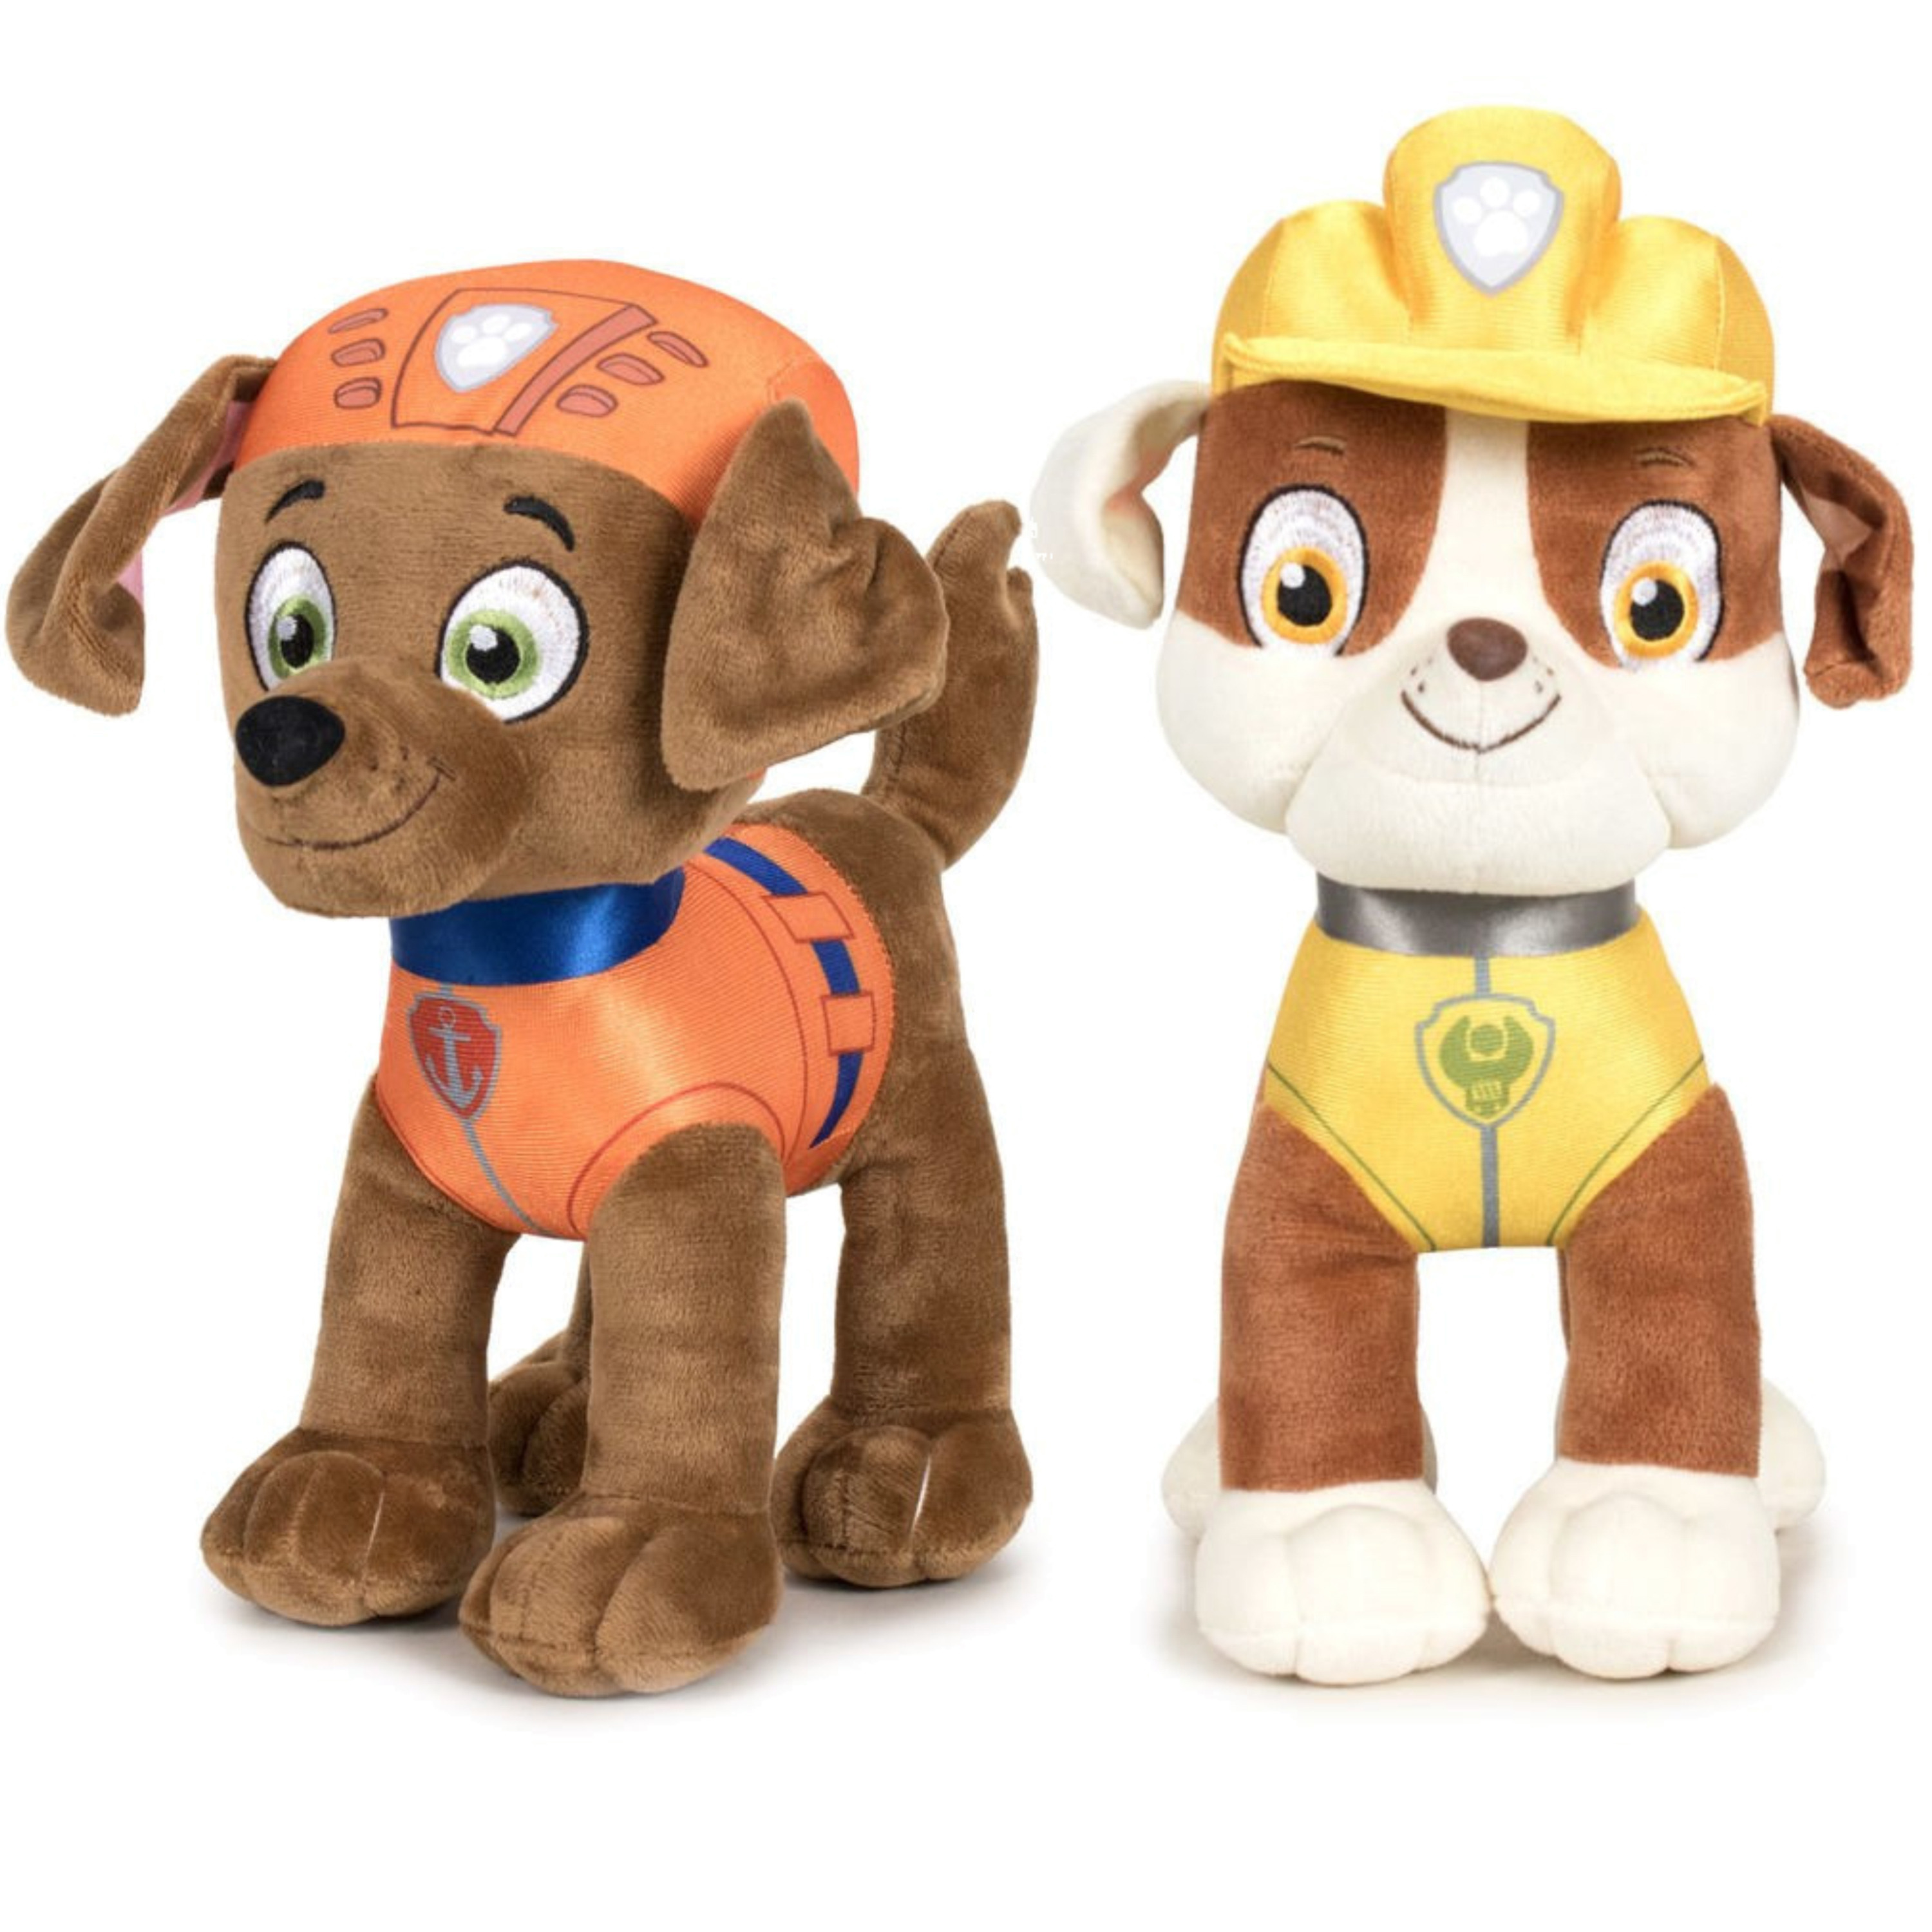 Paw Patrol figuren speelgoed knuffels set van 2x karakters Zuma en Rubble 19 cm